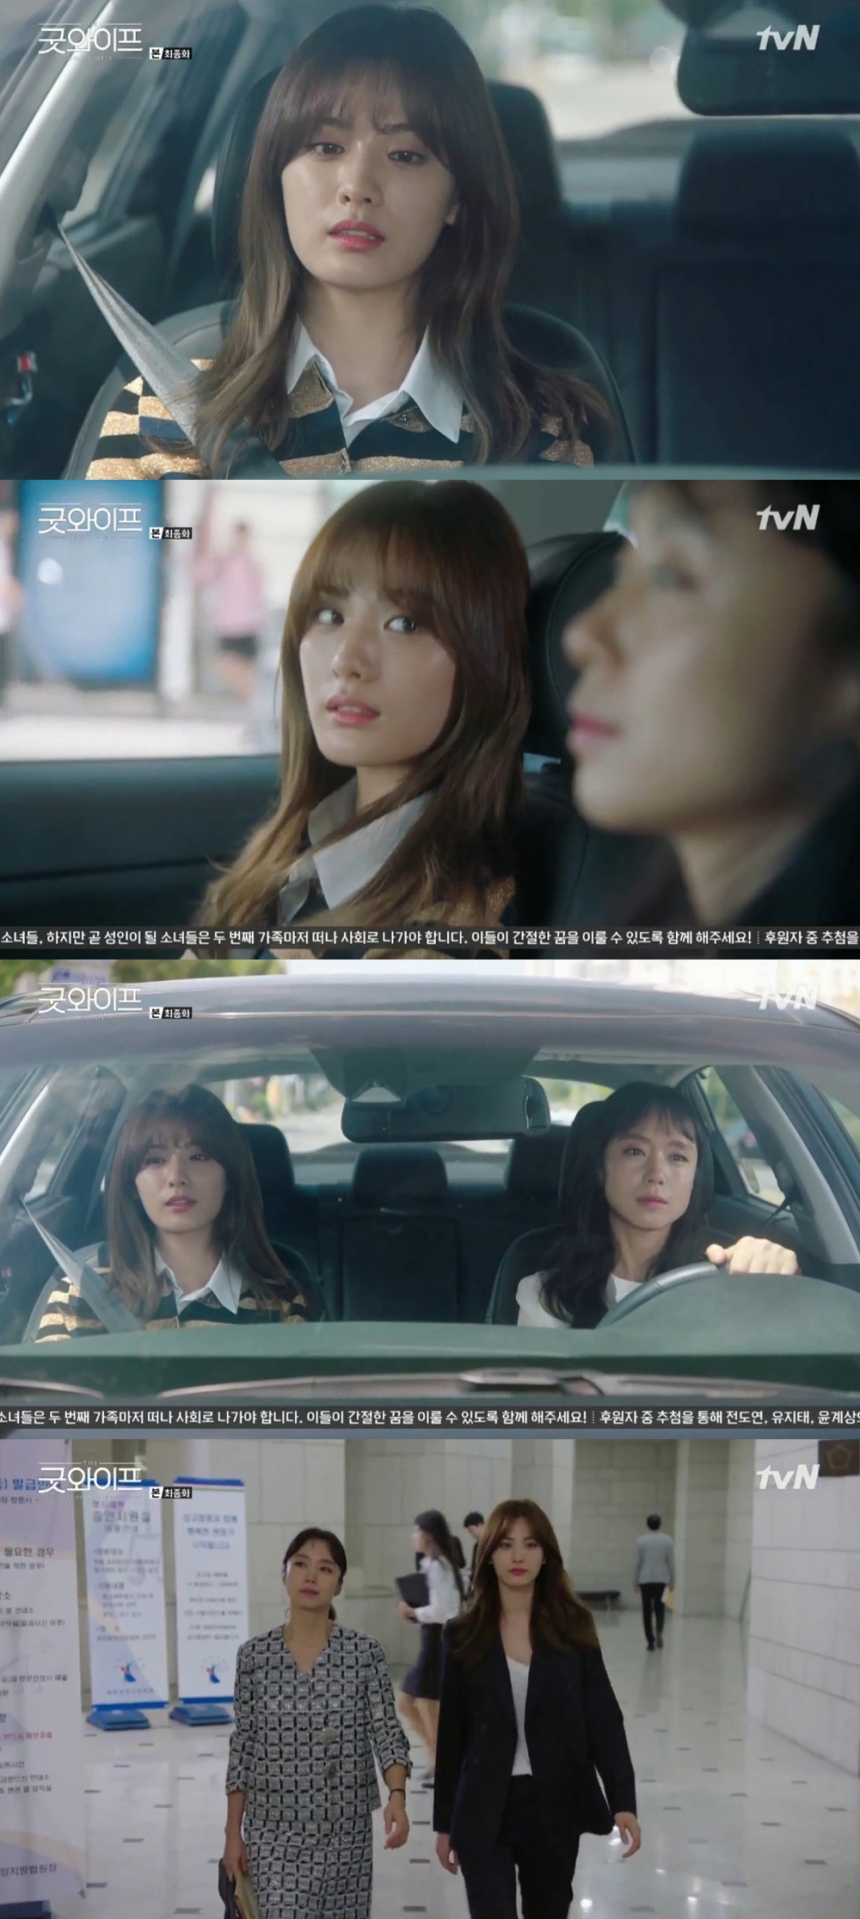 ‘굿와이프’ 전도연-애프터스쿨(After School) 나나 / tvN ‘굿와이프’ 영상 캡처